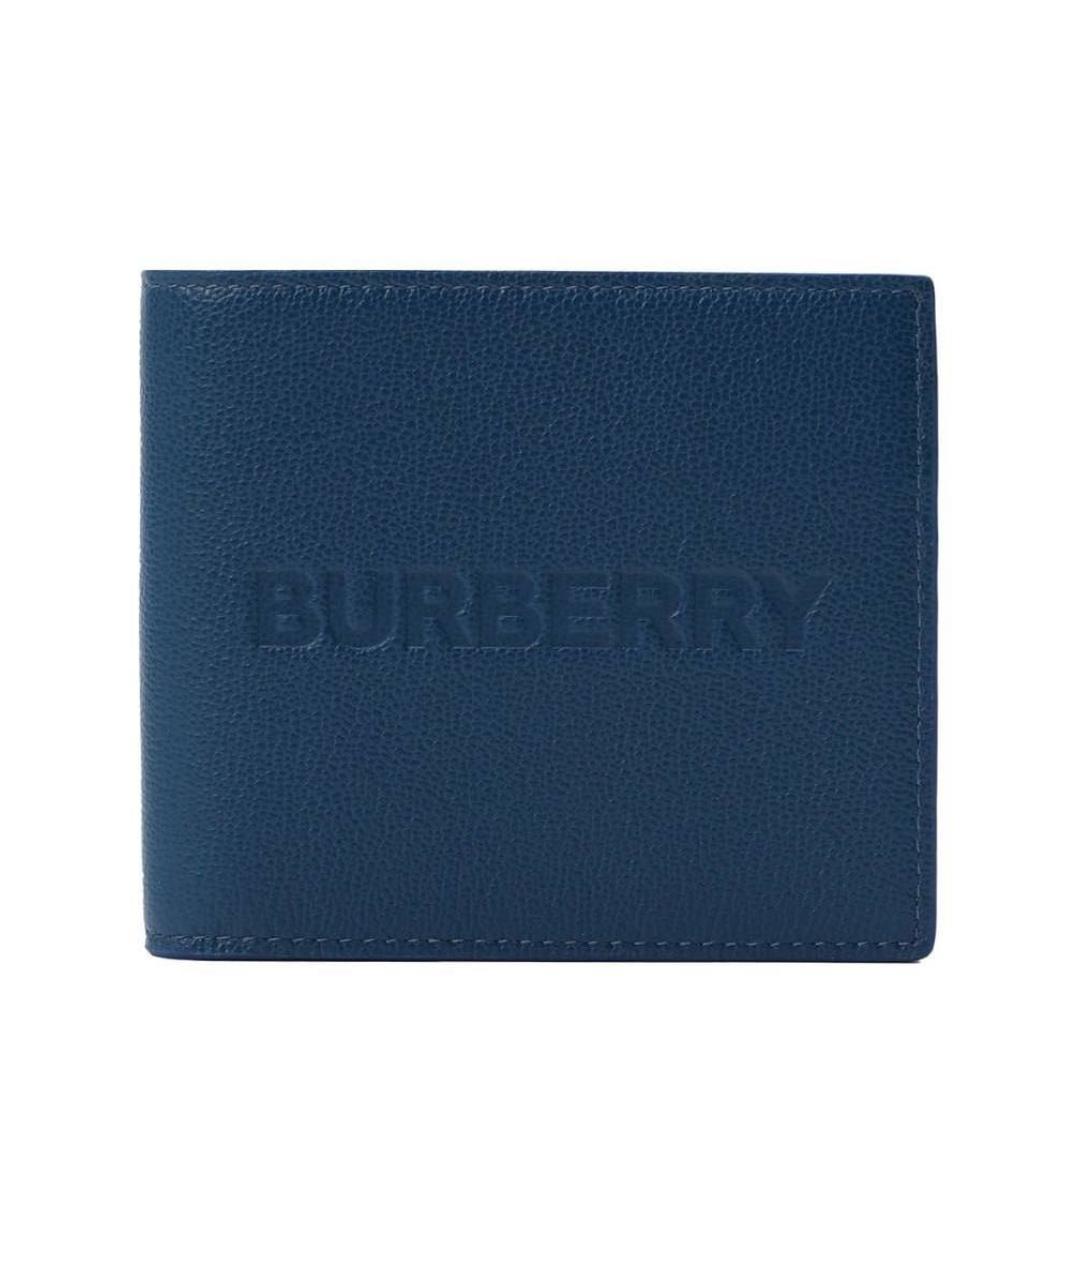 BURBERRY Темно-синий кожаный кошелек, фото 1